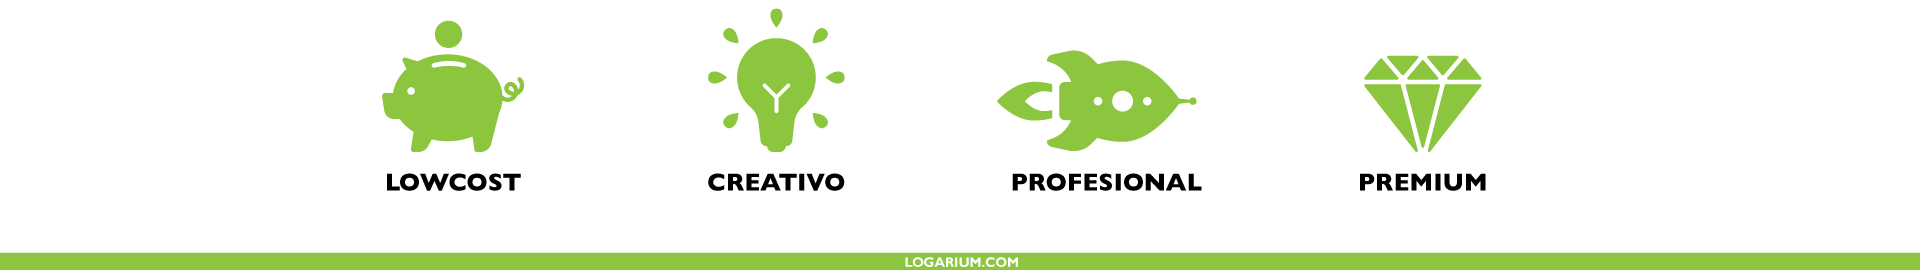 En logarium hacemos Logos Lowcost, creativos, profesionales y premium